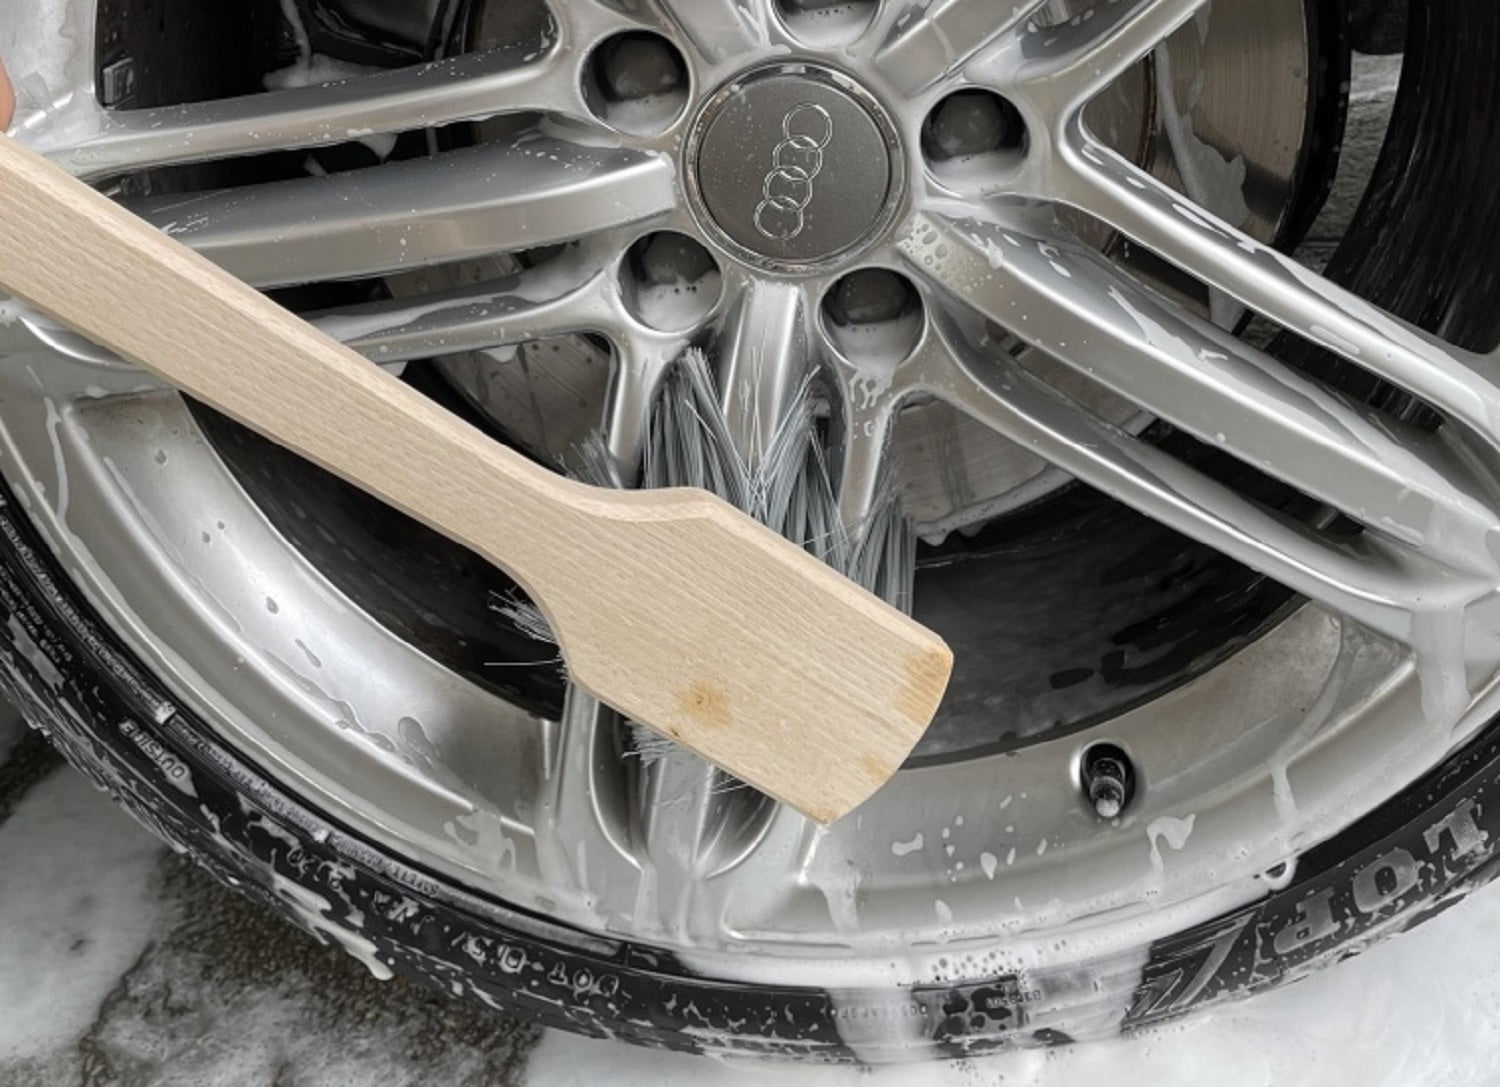 Autowaschbürste mit 2 Bürsten für die Fahrzeugwäsche von Hand – Onlineshop  Schütze